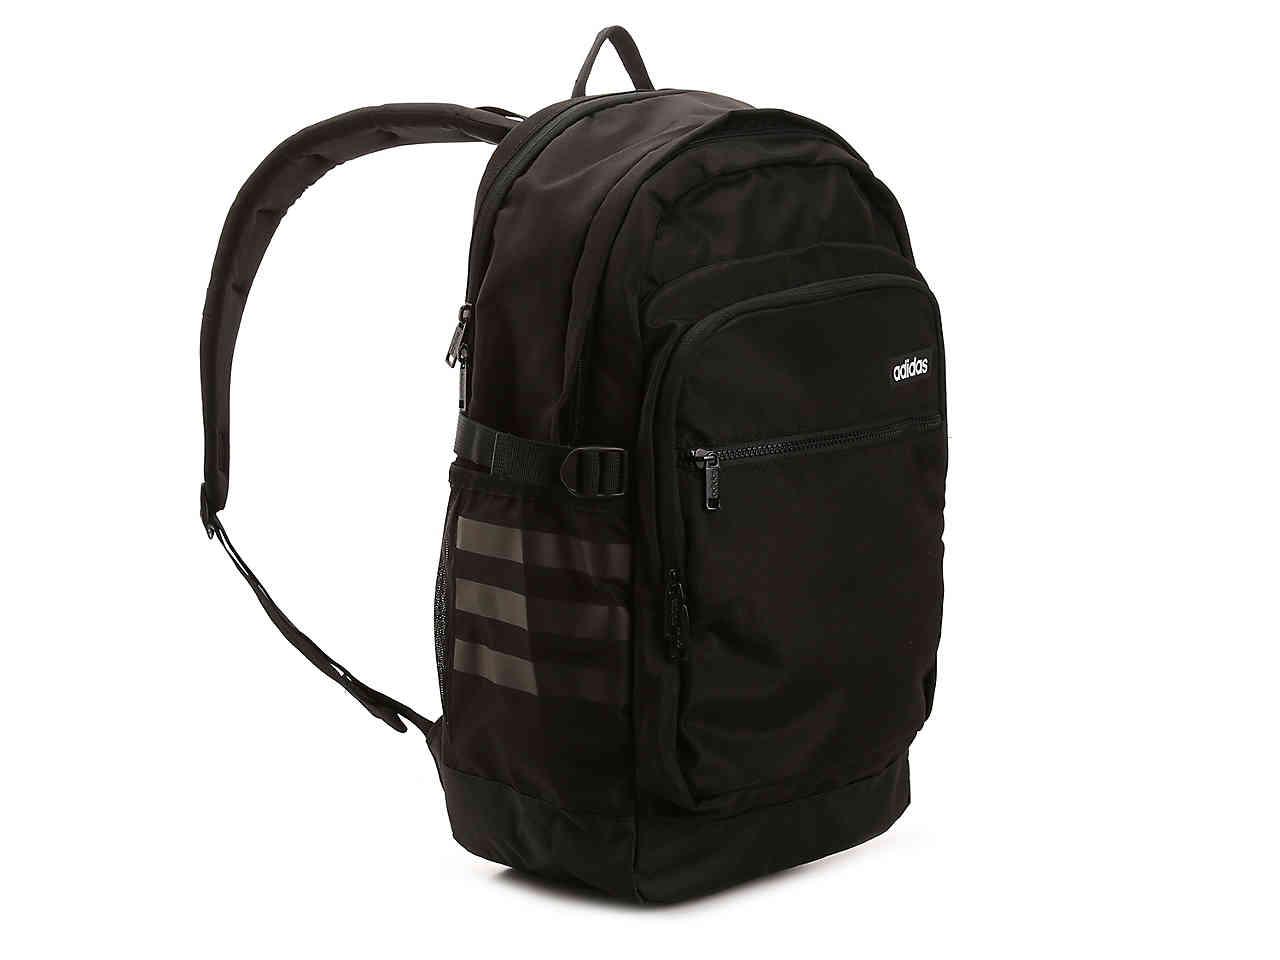 adidas core advantage backpack